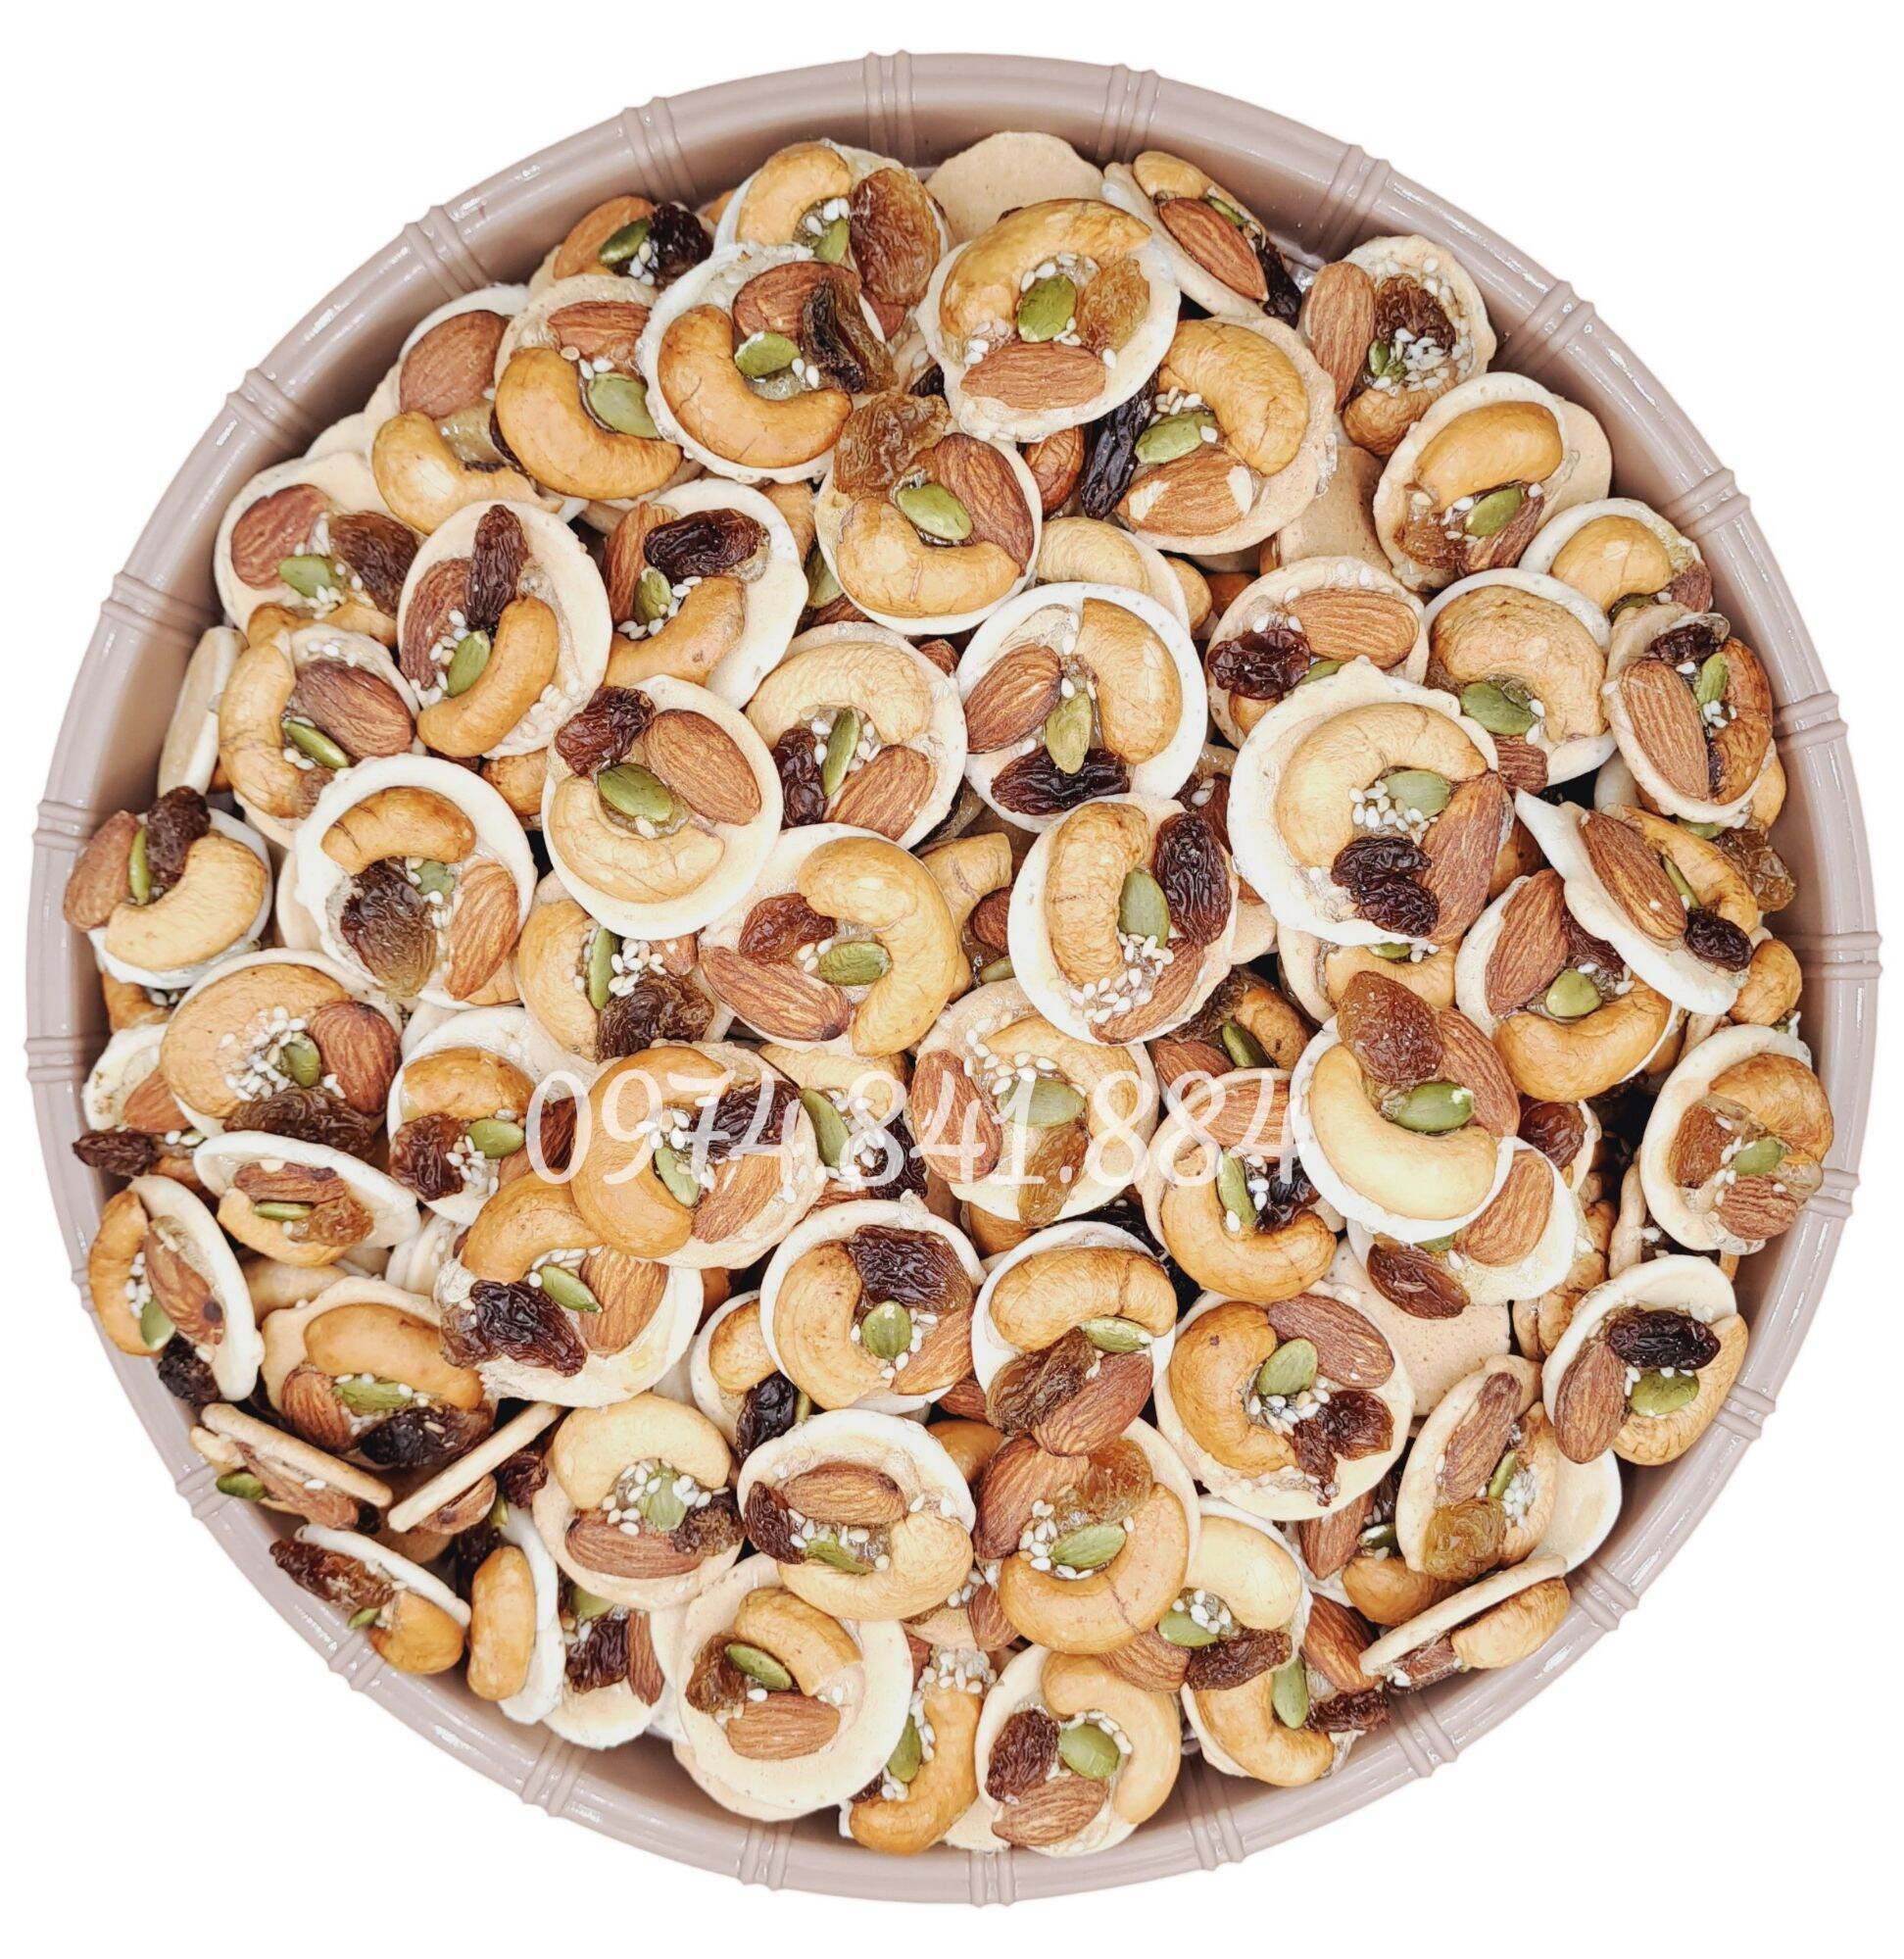 200g bánh đồng tiền mix các loại hạt (hạt điều hạnh nhân nho mè)- đồ ăn vặt - bách hóa online uy tín